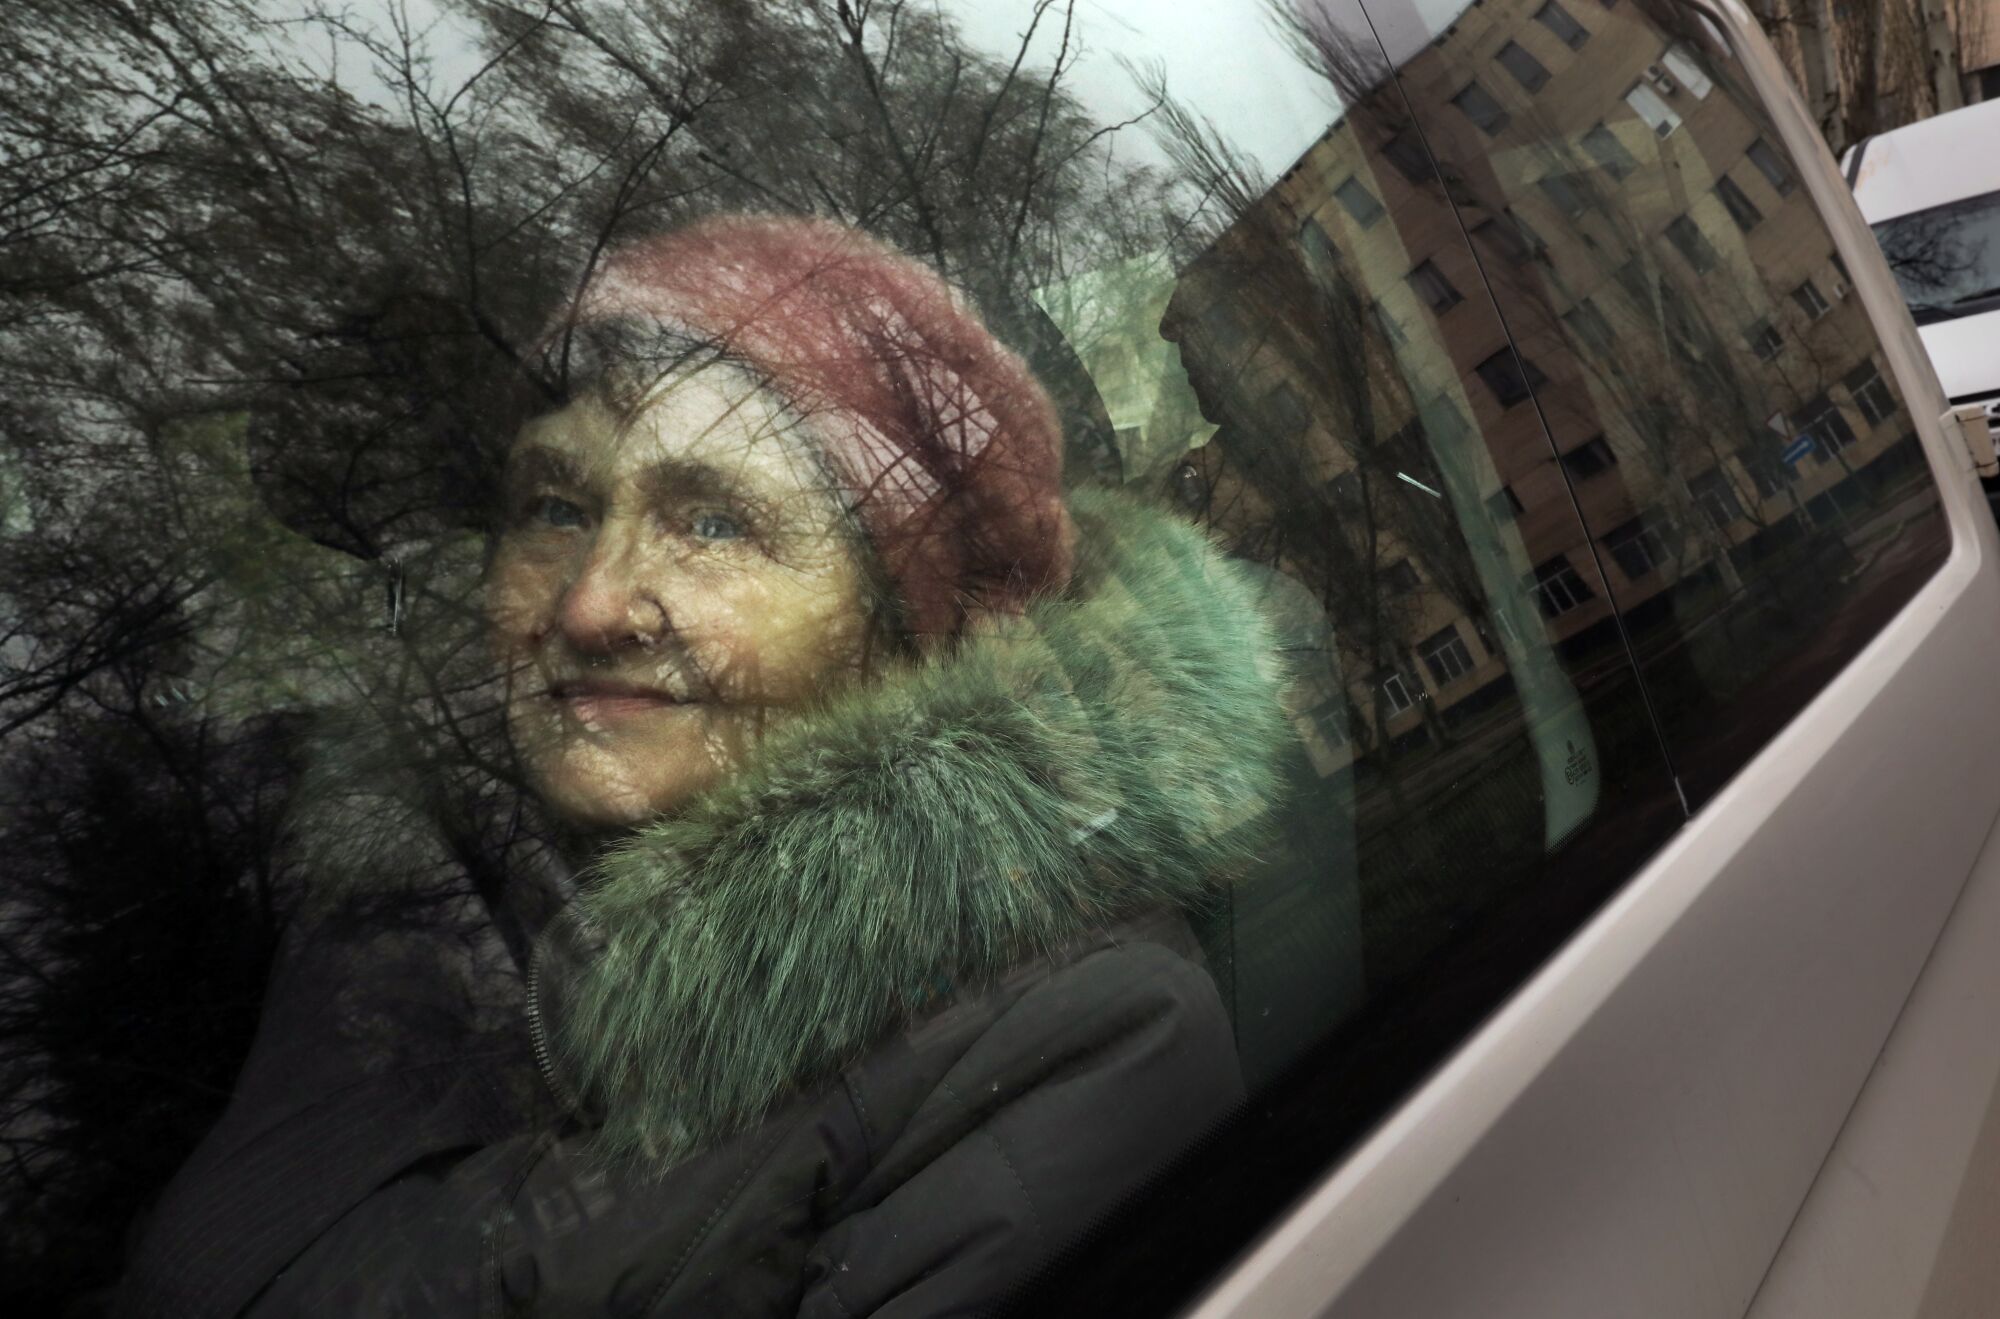 Bir kadın, dışarıdaki ağaçları da yansıtan bir aracın camından dışarı bakıyor.